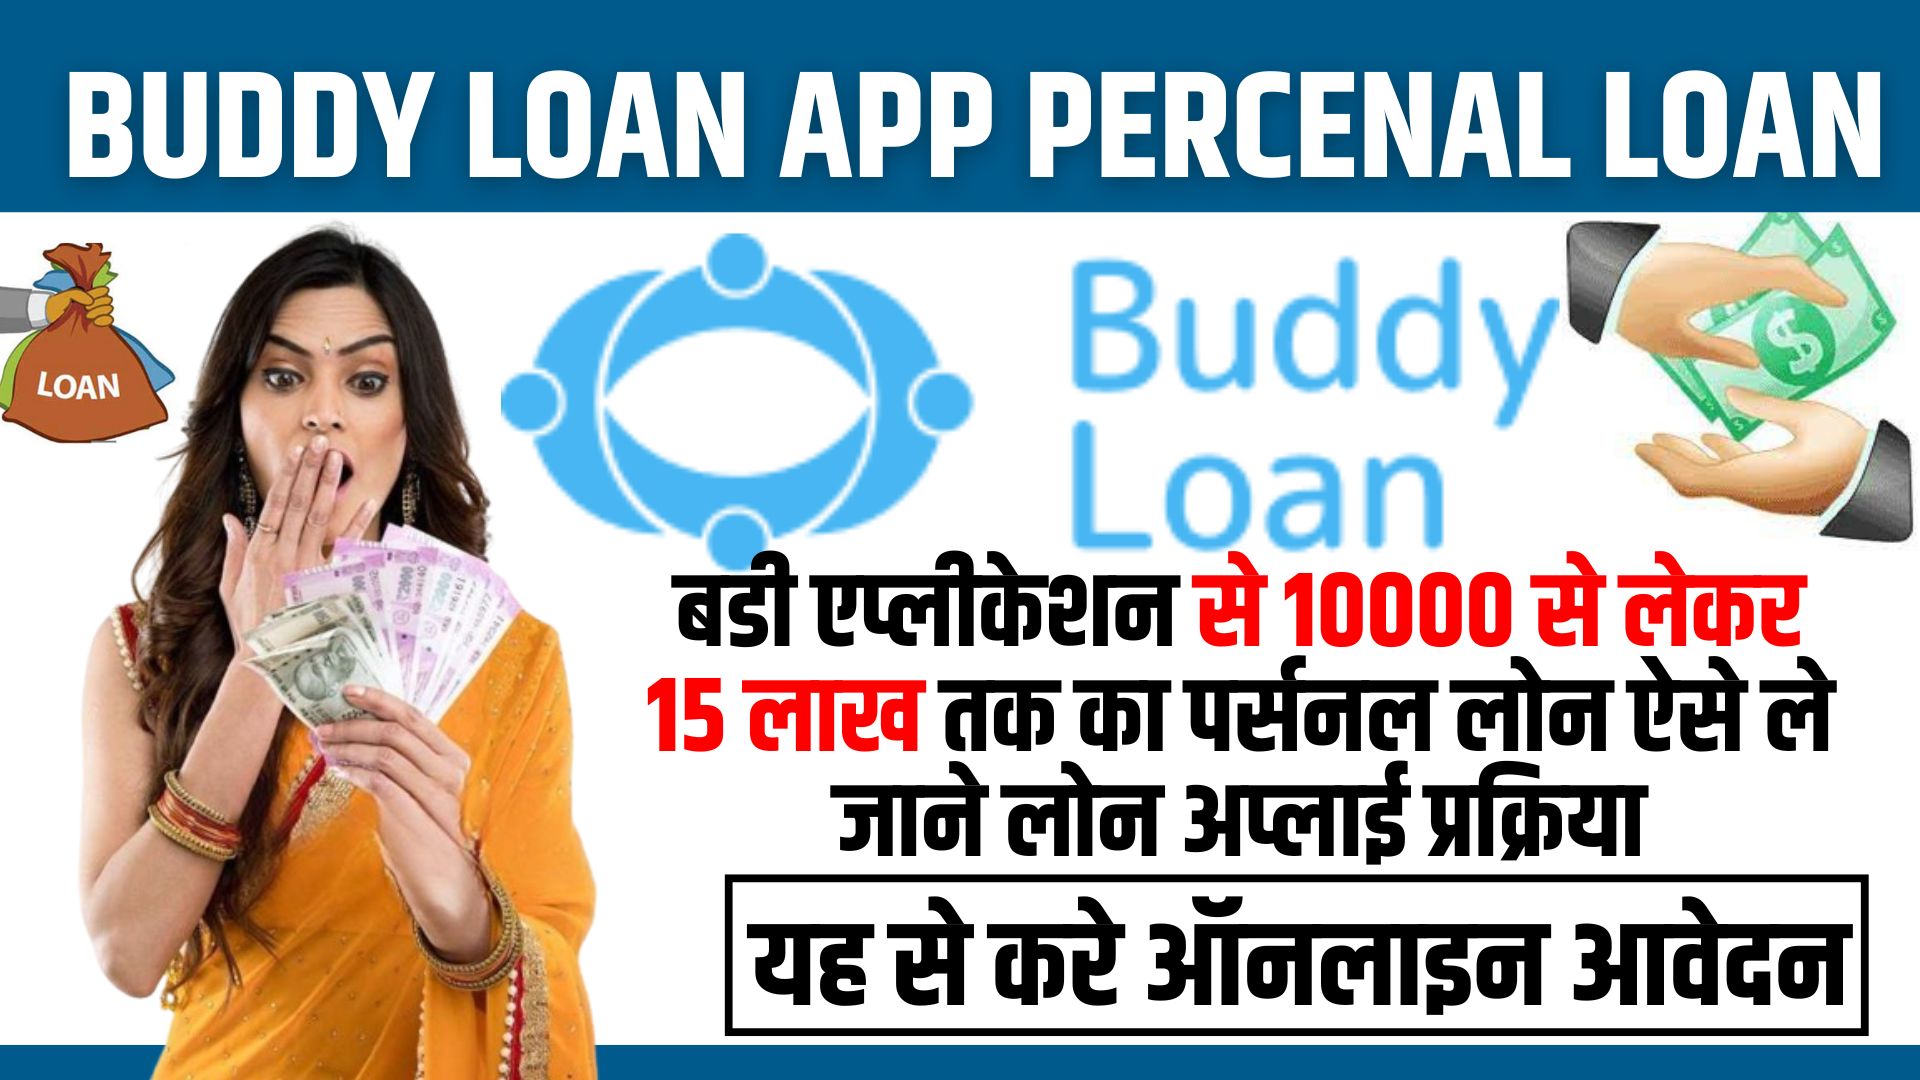 Buddy Loan App Percenal Loan